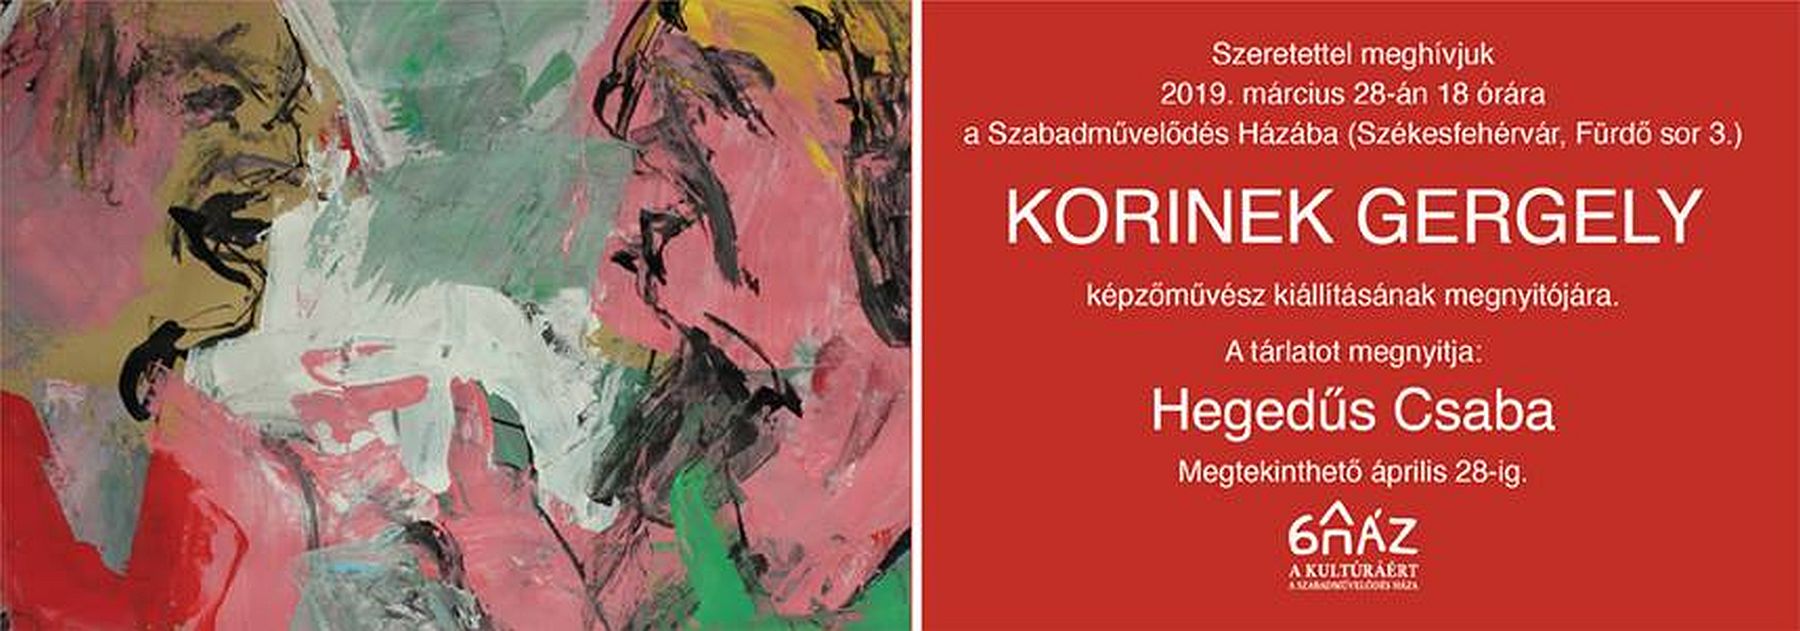 Korinek Gergely, képzőművész kiállítása nyílik A Szabadművelődés Házában